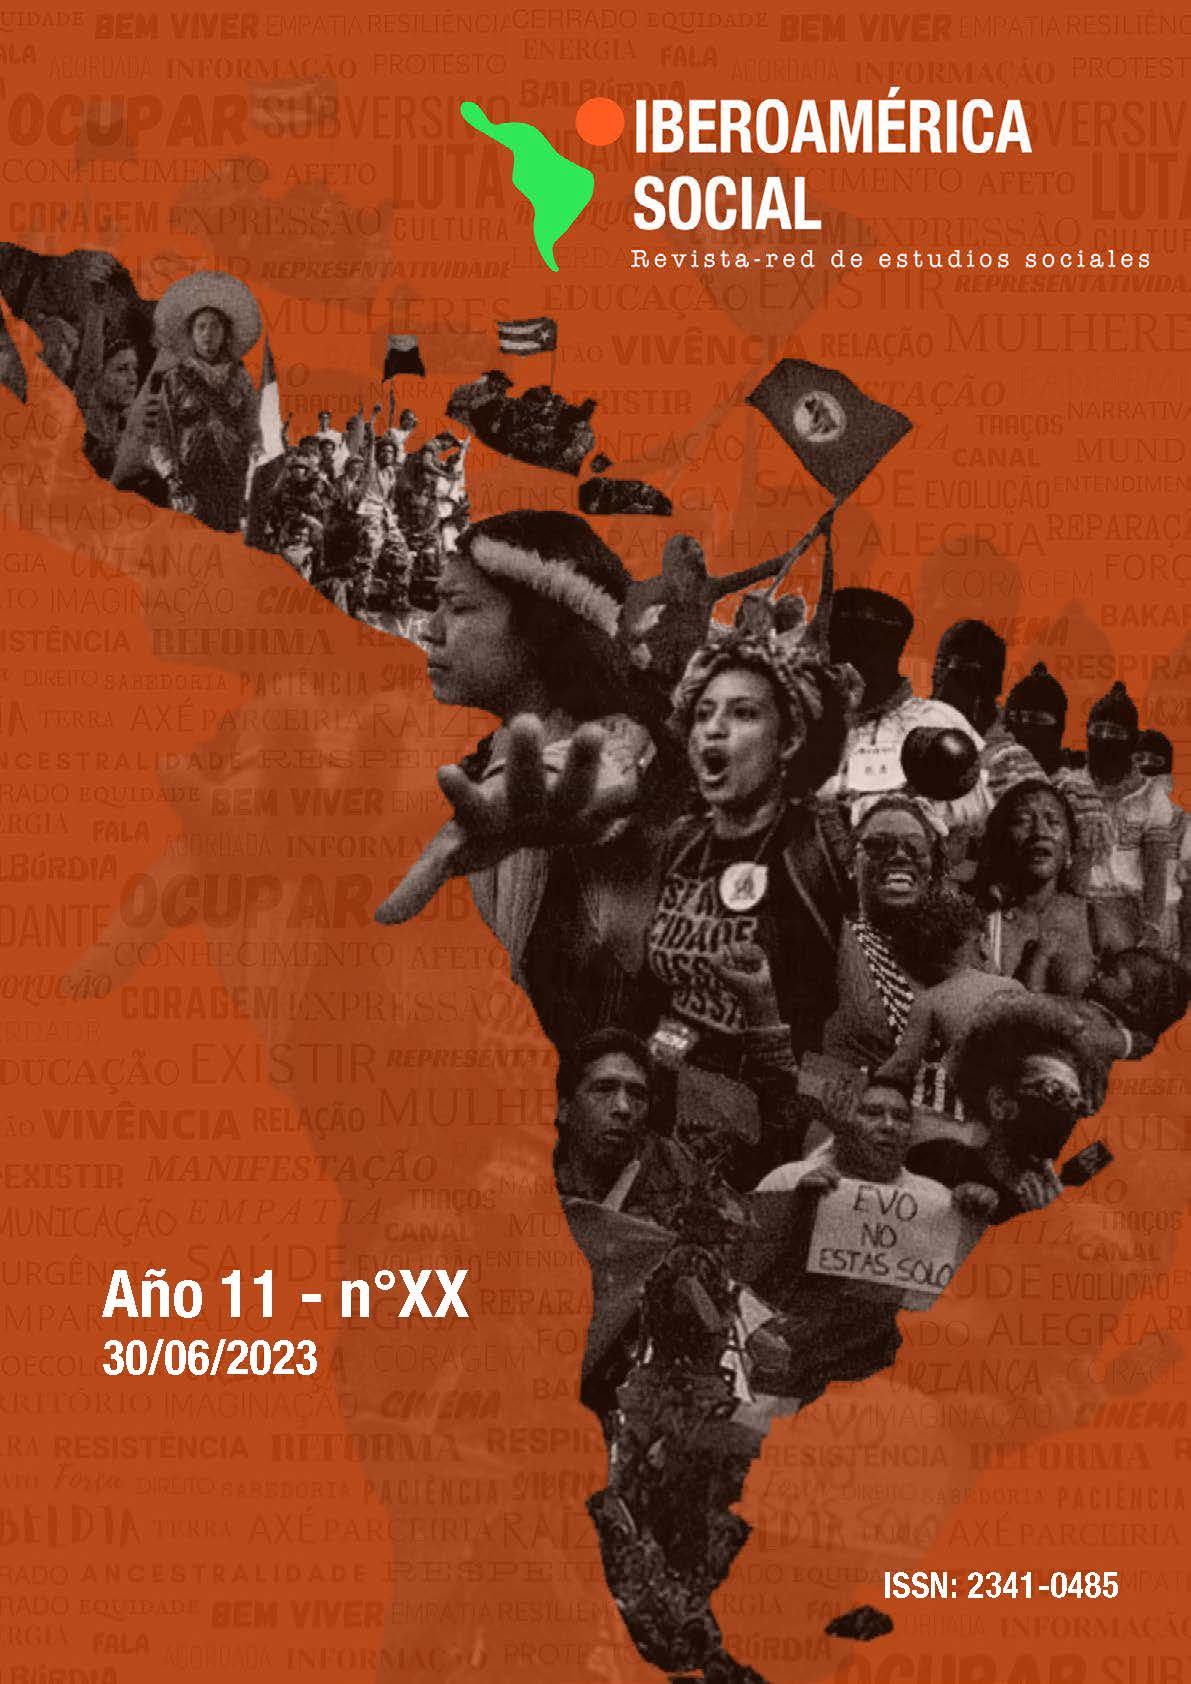 					Ver Núm. XX (11): Iberoamérica Social: Revista-red de estudios sociales
				